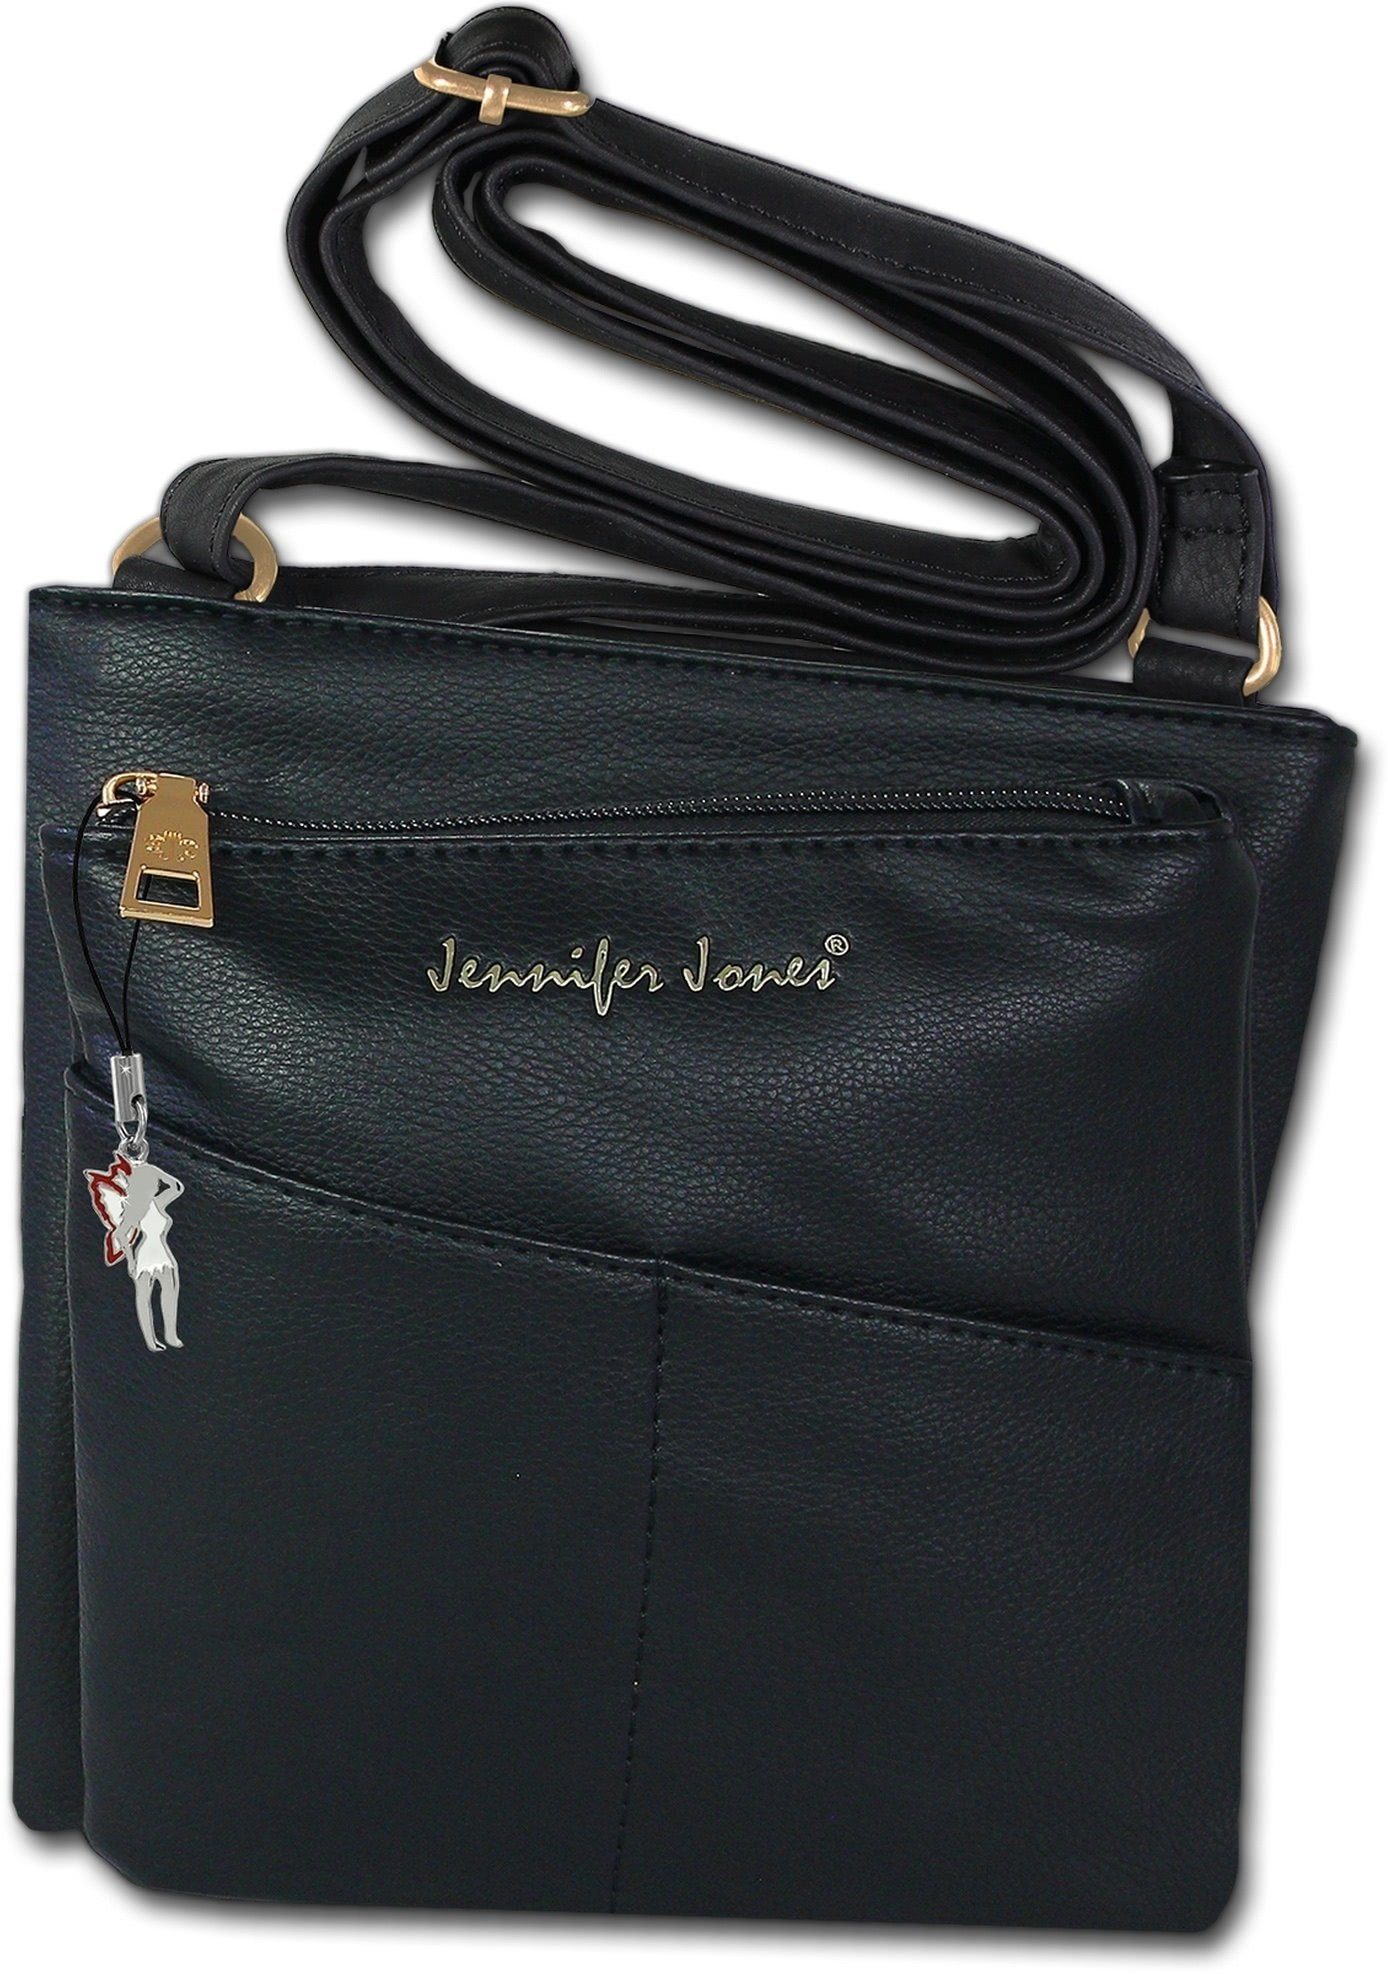 Damen schwarz Jones aus Kunstleder, in ca. Damen Jennifer Tasche Kunstleder Abendtasche), Größe (Abendtasche, Jennifer Jones Abendtasche 21cm Tasche